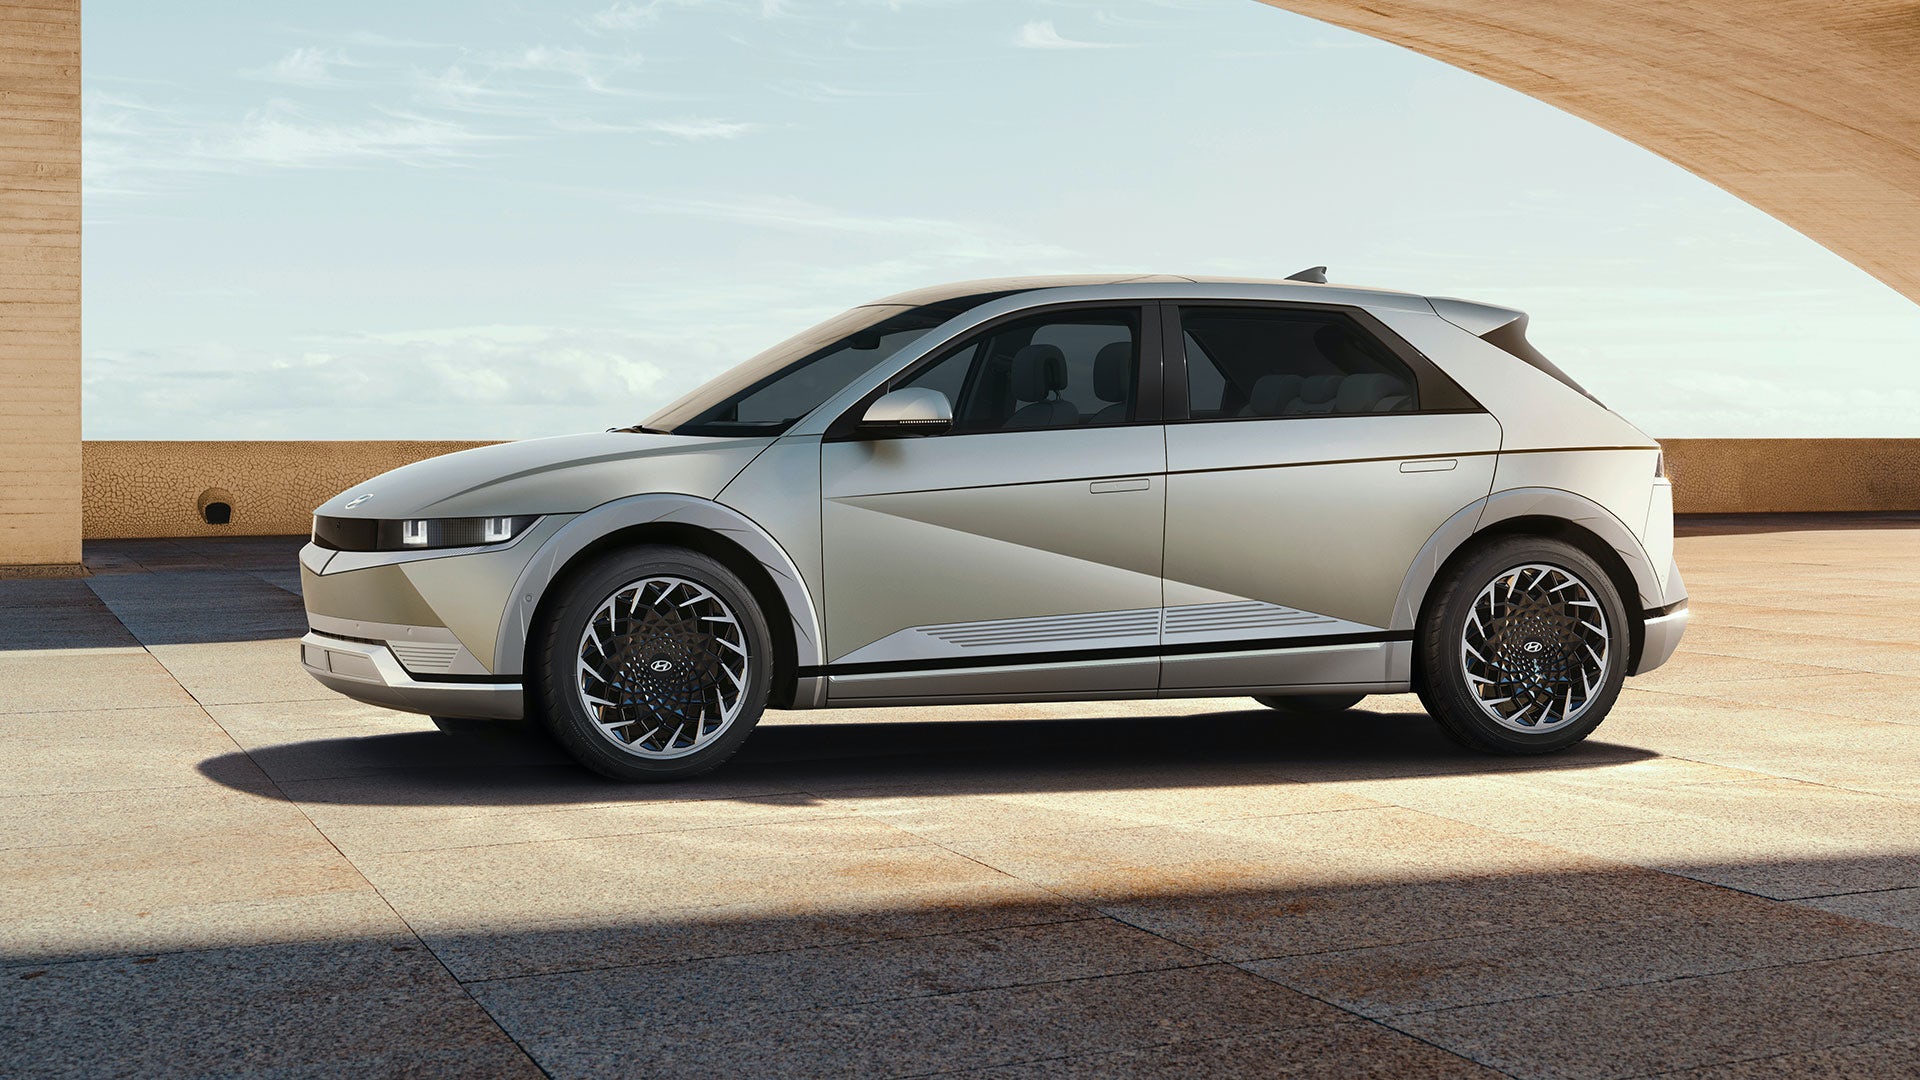 2022 Hyundai Ioniq 5 electric car revealed: price, specs ...